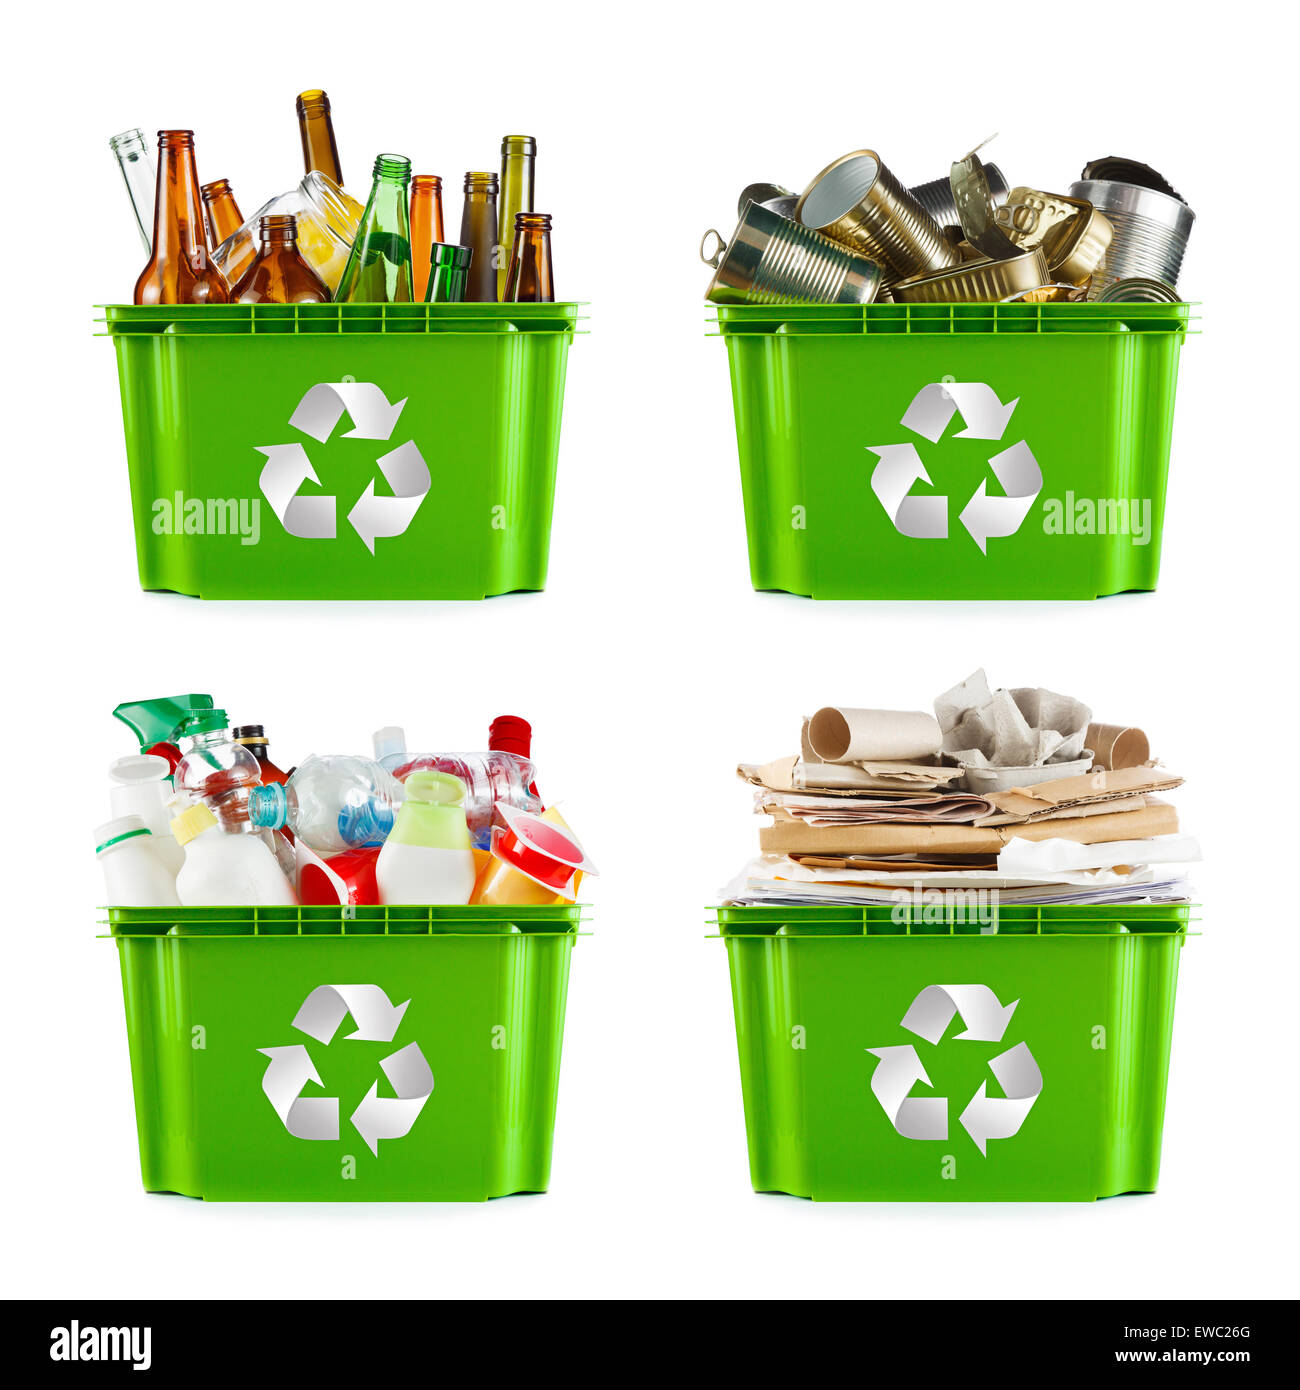 Eine Auswahl von Abfall zur Verwertung. Metall, Kunststoff, Papier und Glas getrennt Stockfoto